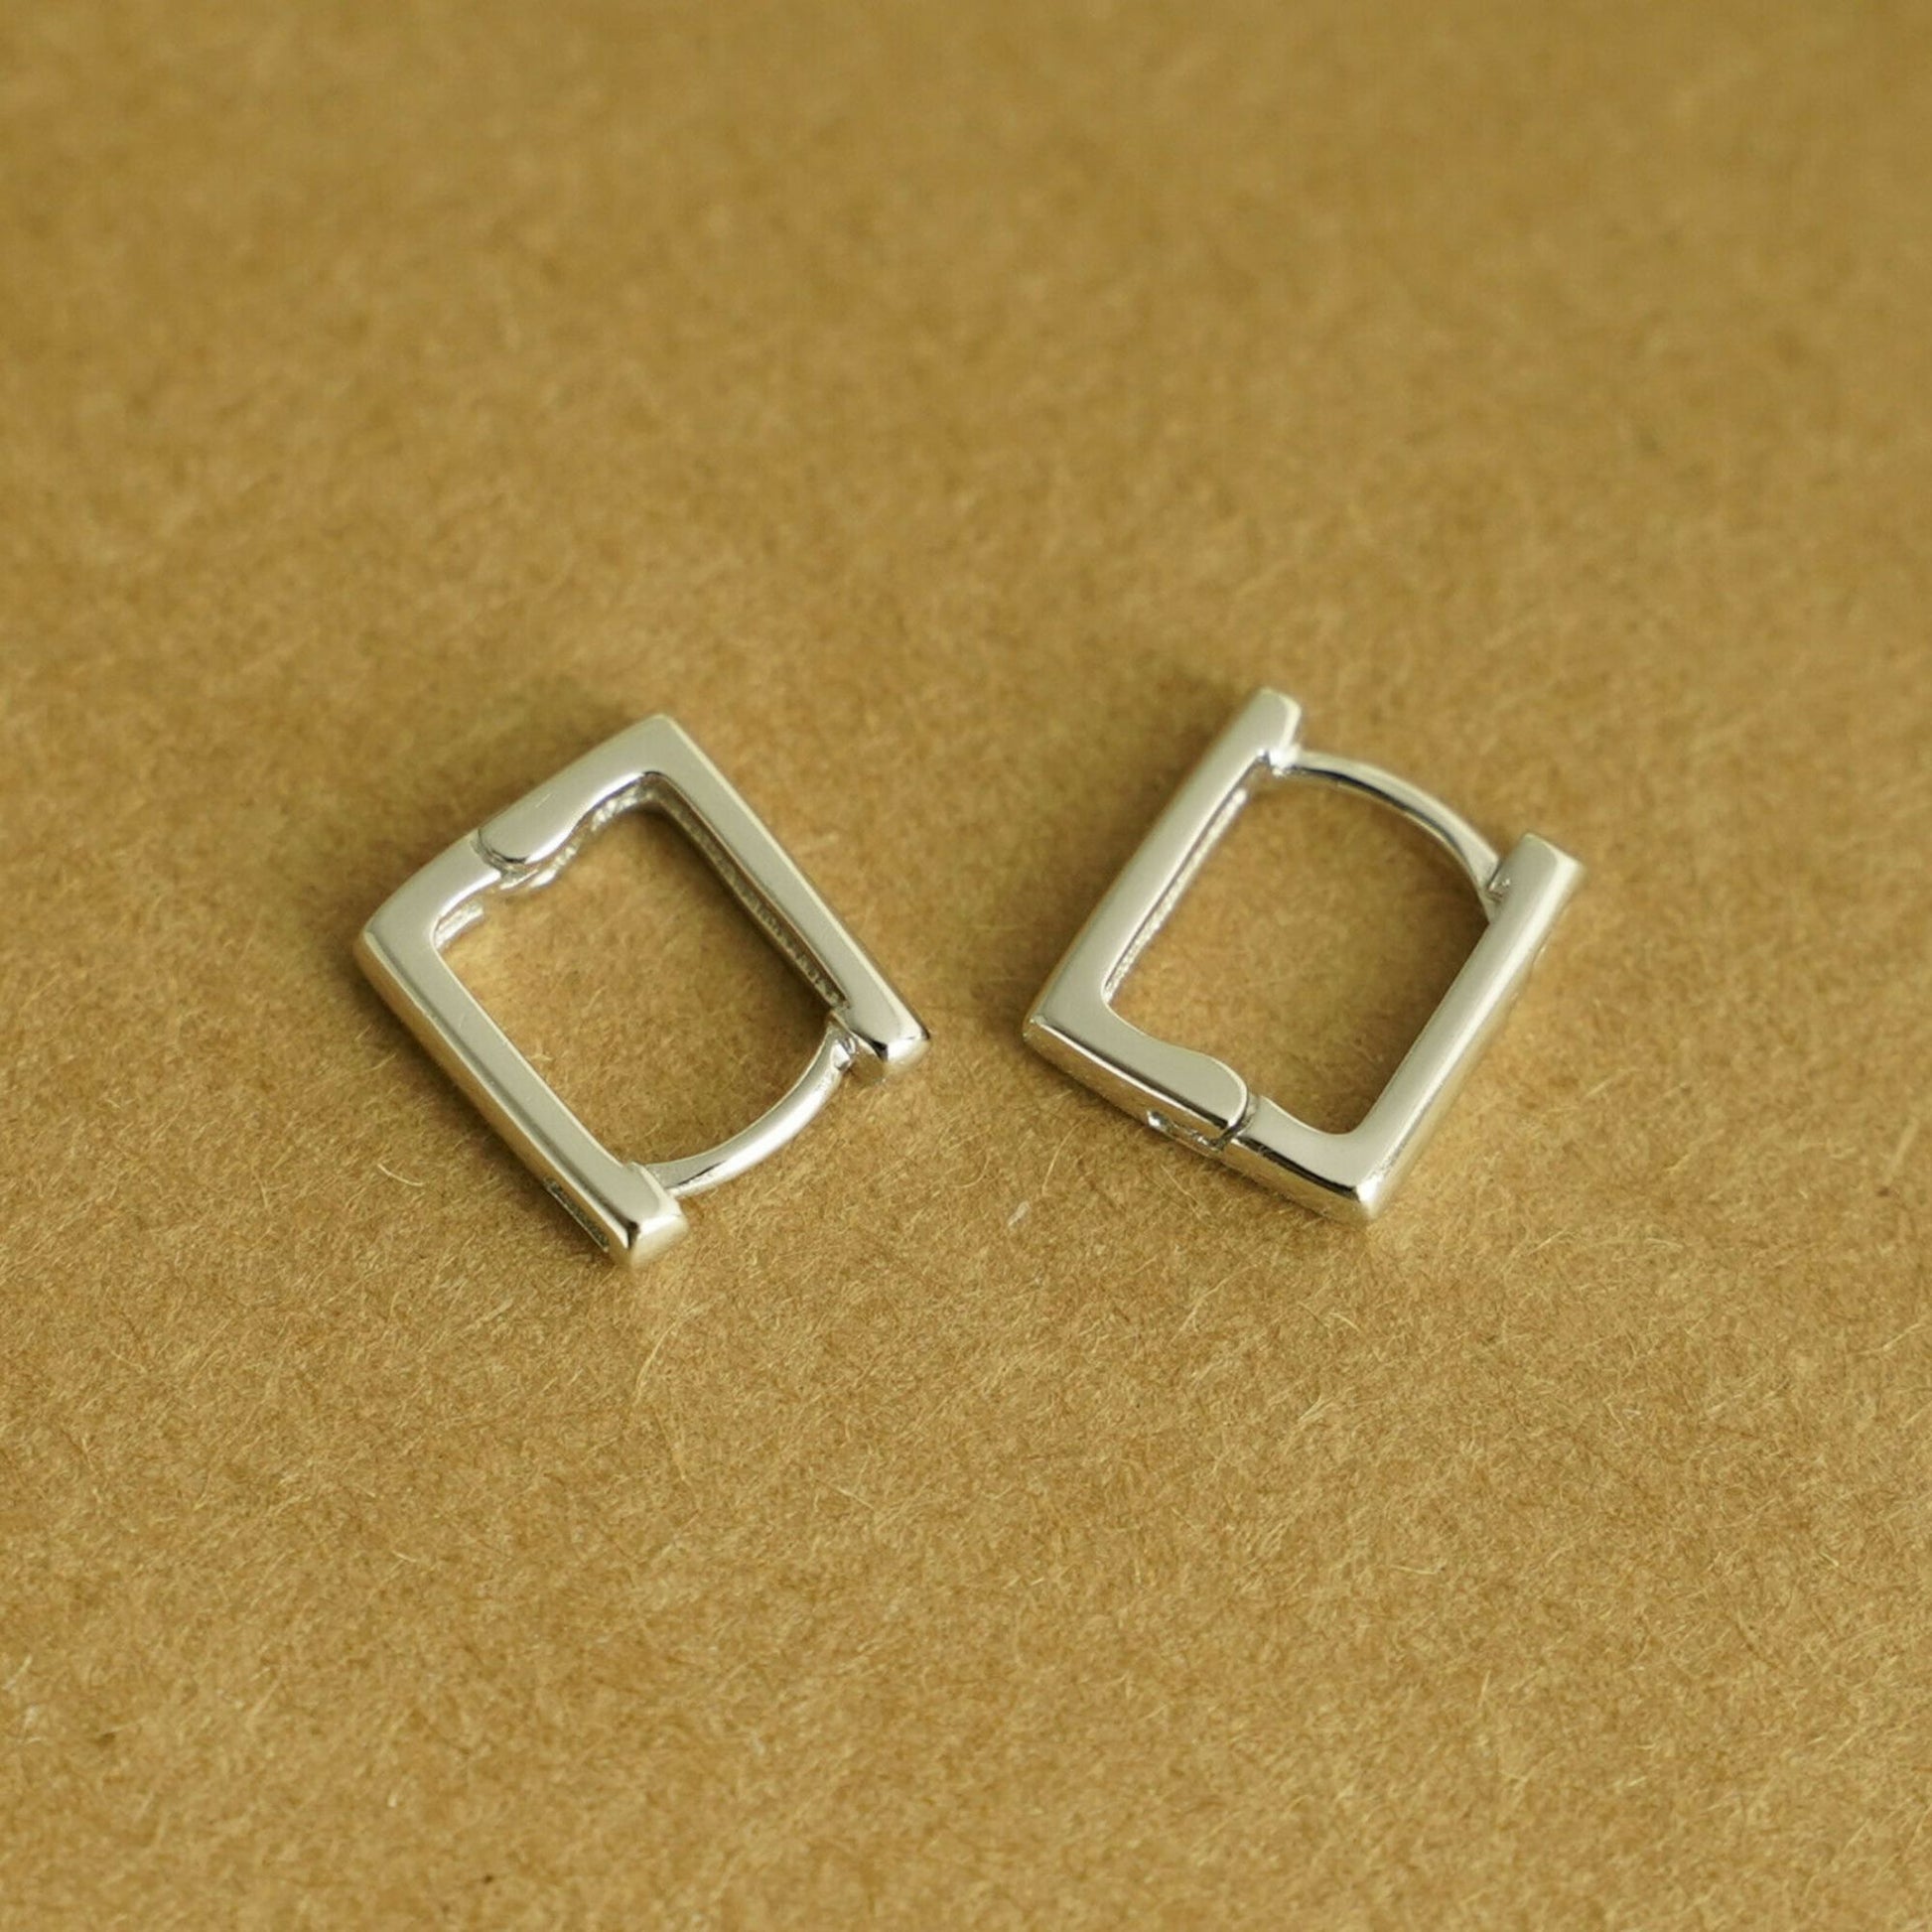 Square Hoop Huggie Earrings in Sterling Silver with Rhodium Plating - sugarkittenlondon